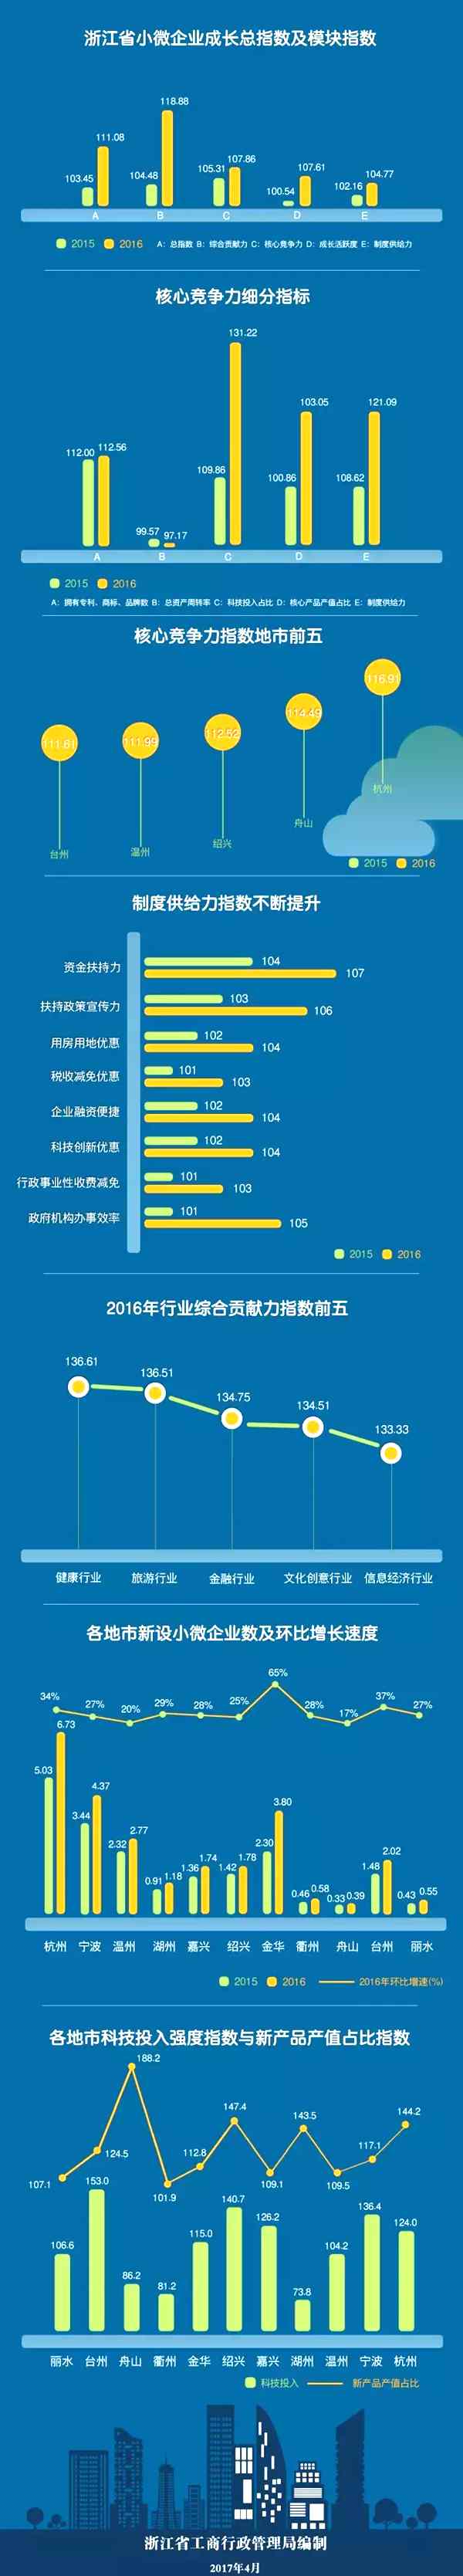 浙江发布全国首个小微企业成长指数报告